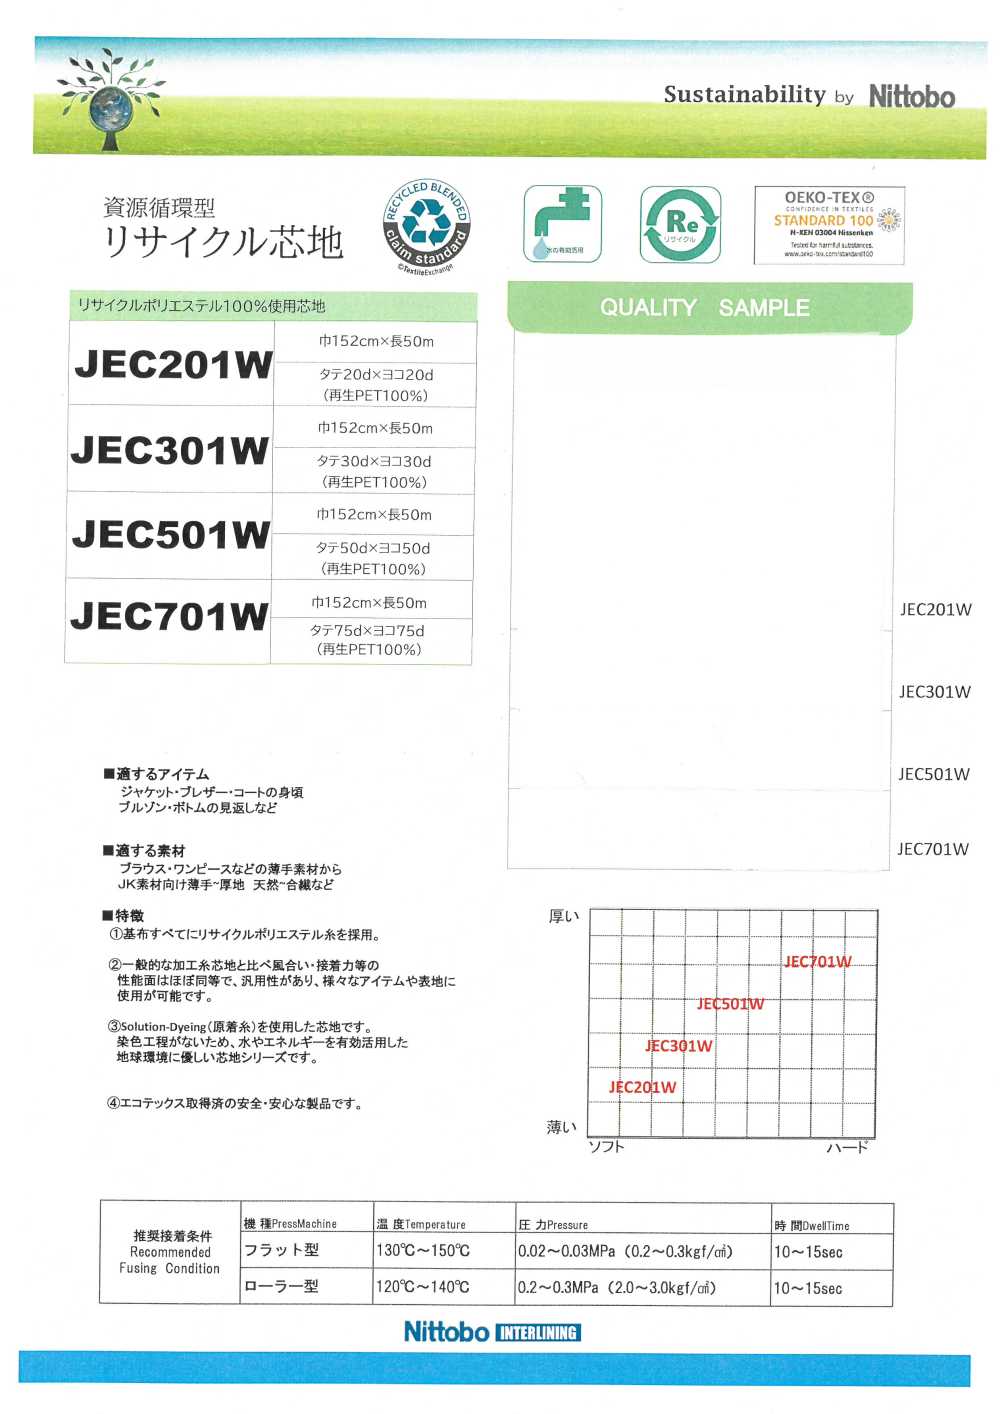 JEC301W Entretela Macia Versátil Fina 30D Materiais Reciclados Usados[Entrelinha] Nittobo